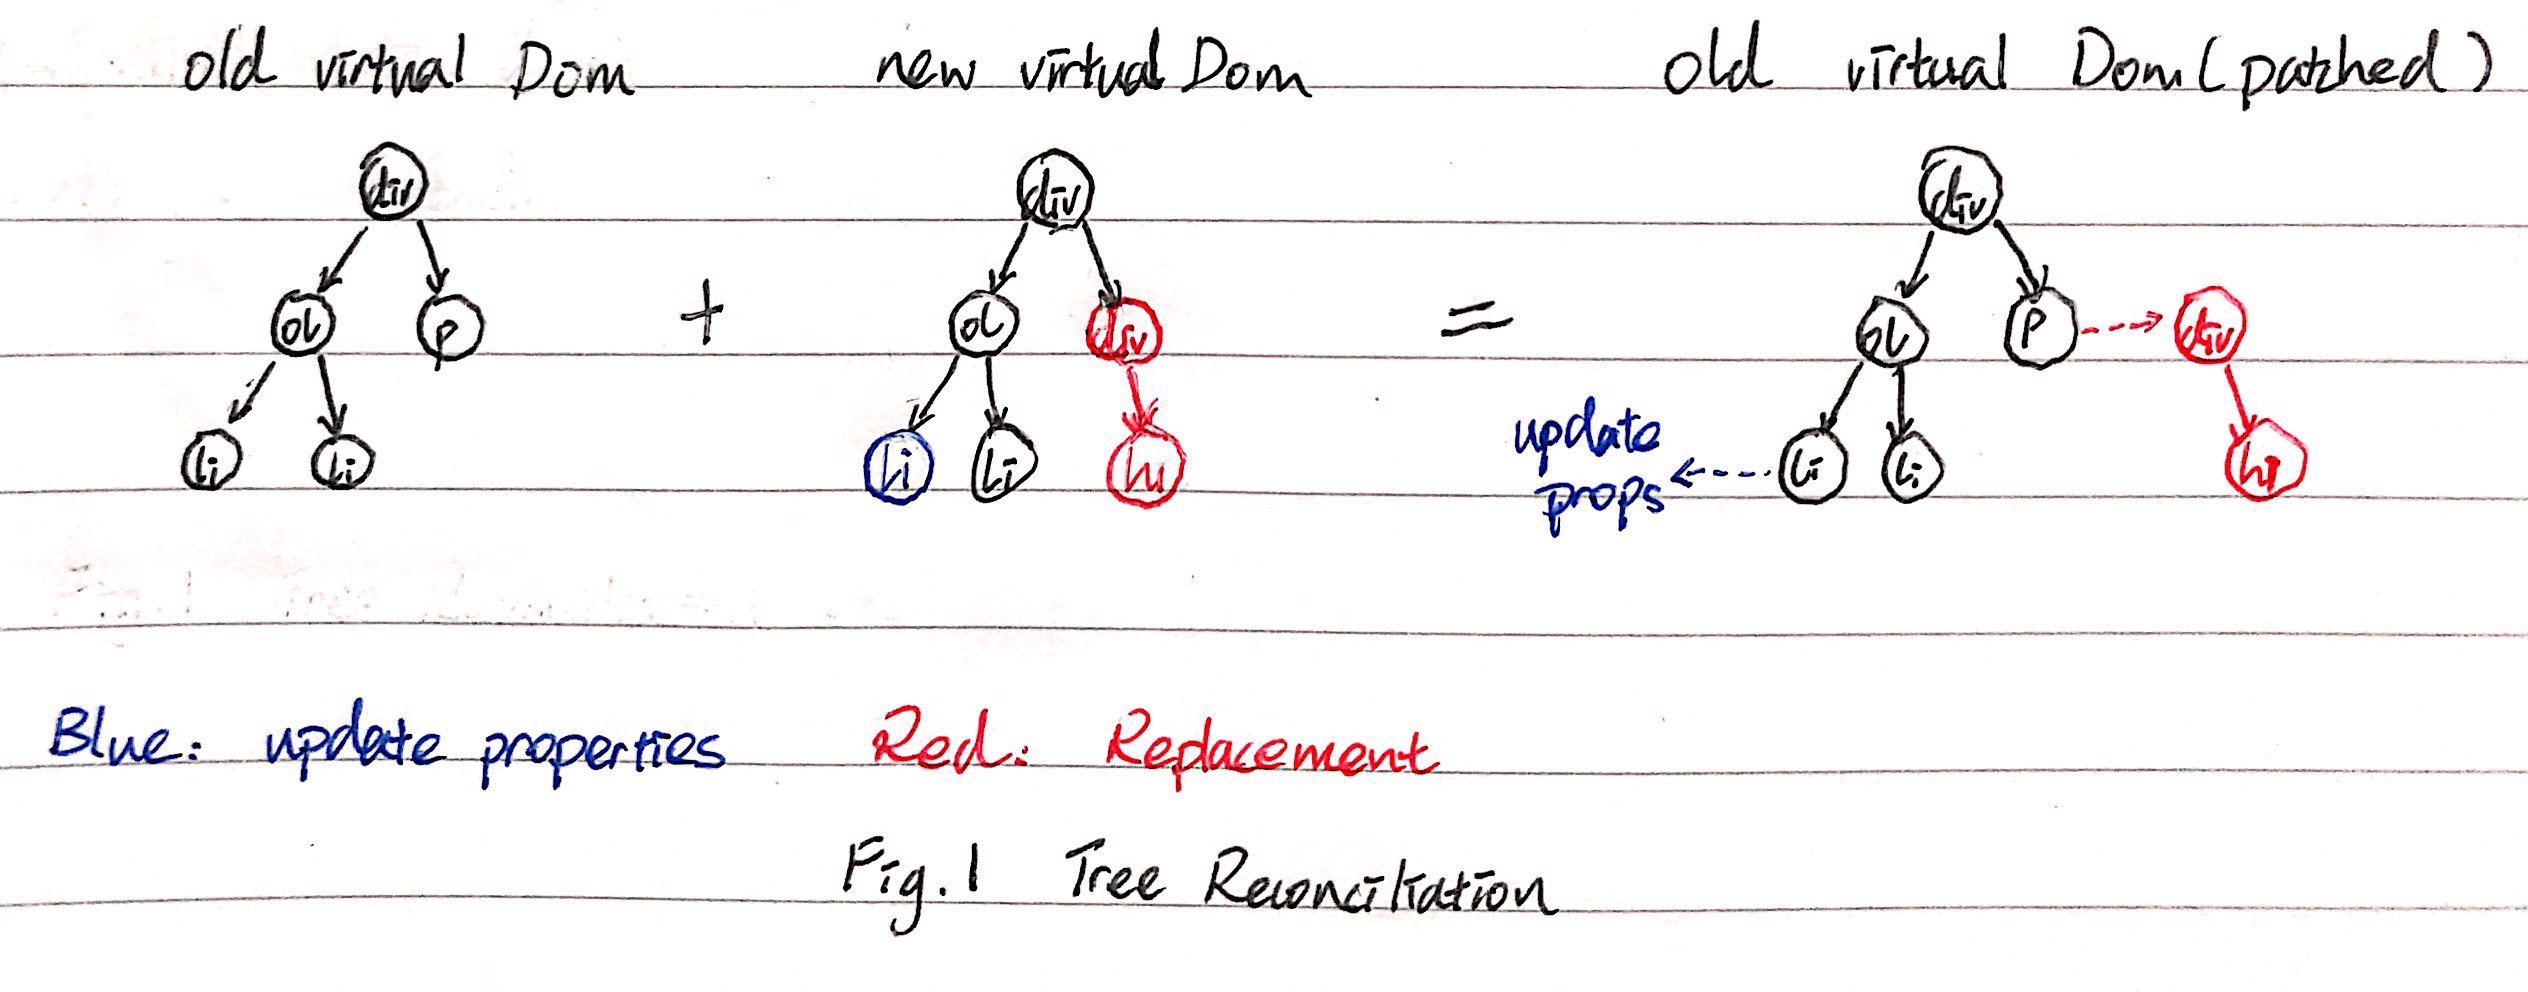 图1. Tree Reconciliation